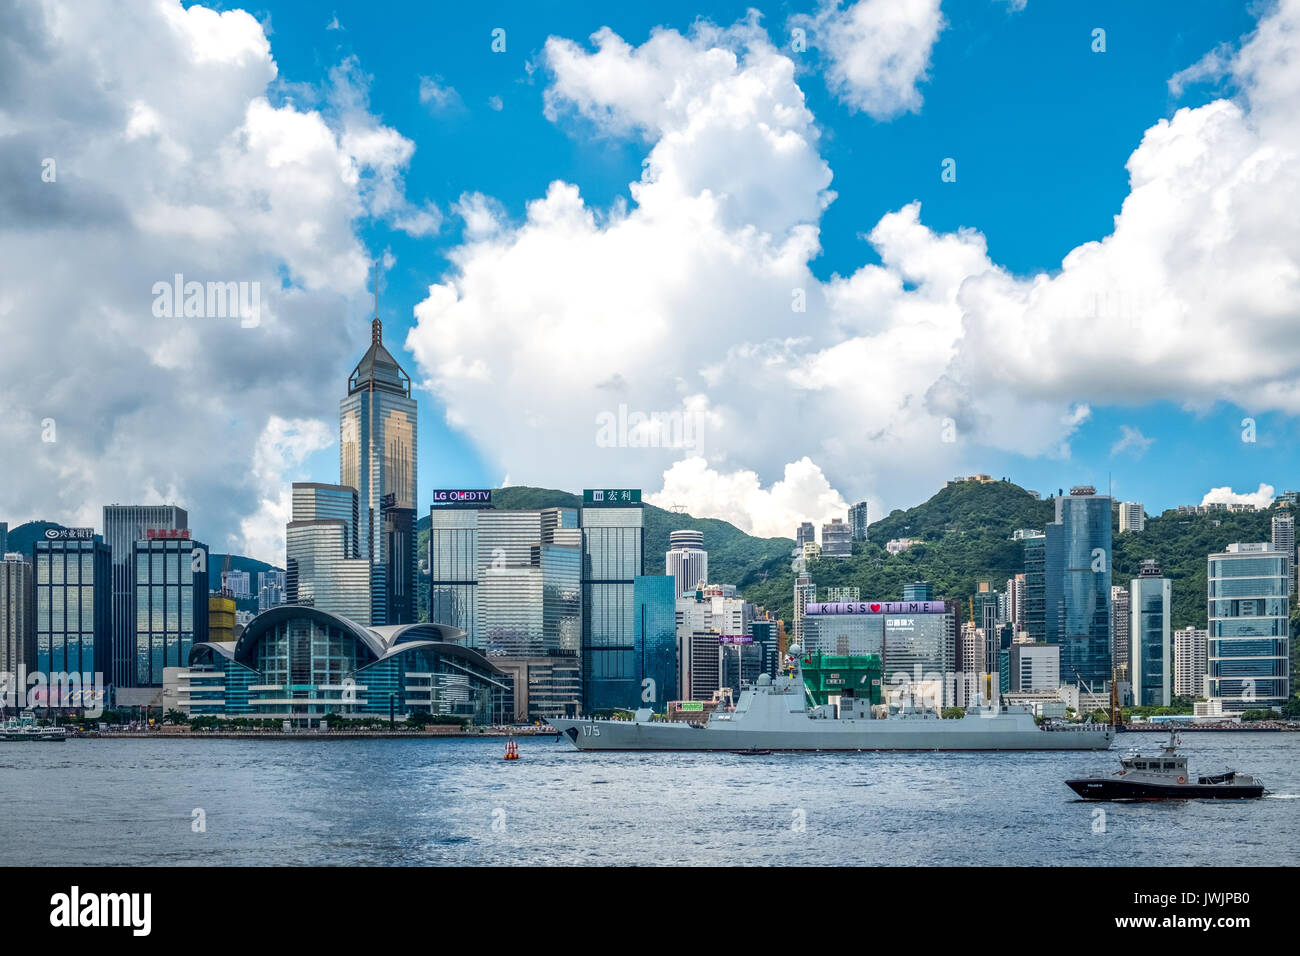 Le port de Victoria, Hong Kong - 11 juin 2017 : Yinchuan (numéro 175) acrossed missiles de port de Victoria de Hong Kong dans la base navale de retour Banque D'Images